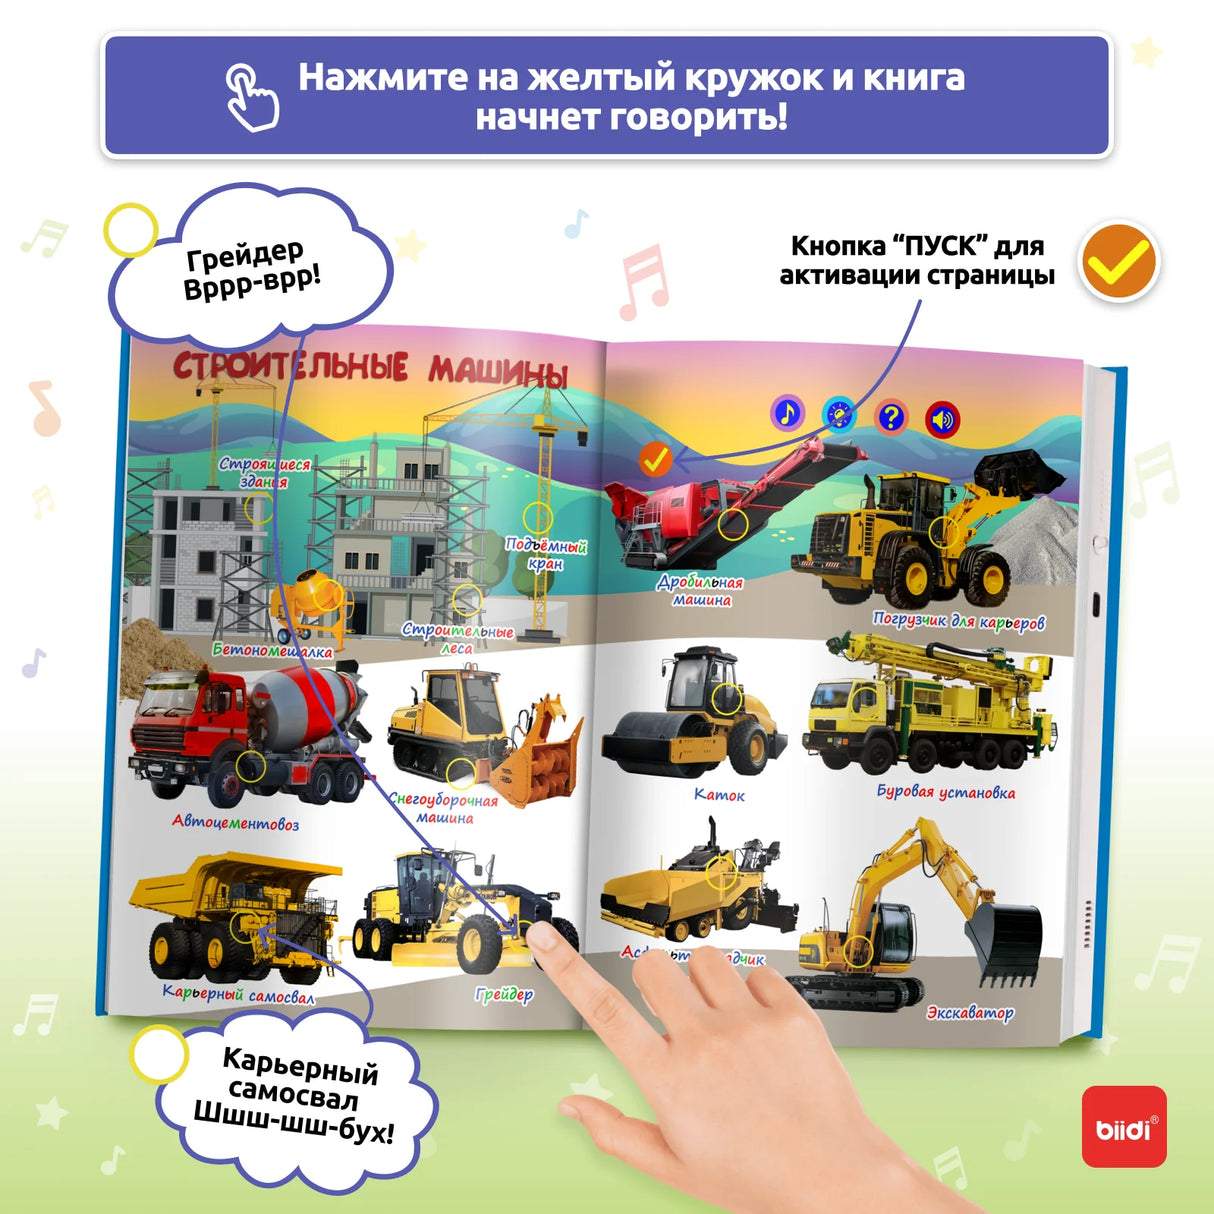 Rääkiv raamat lastele: muusikaga hariv mänguasi